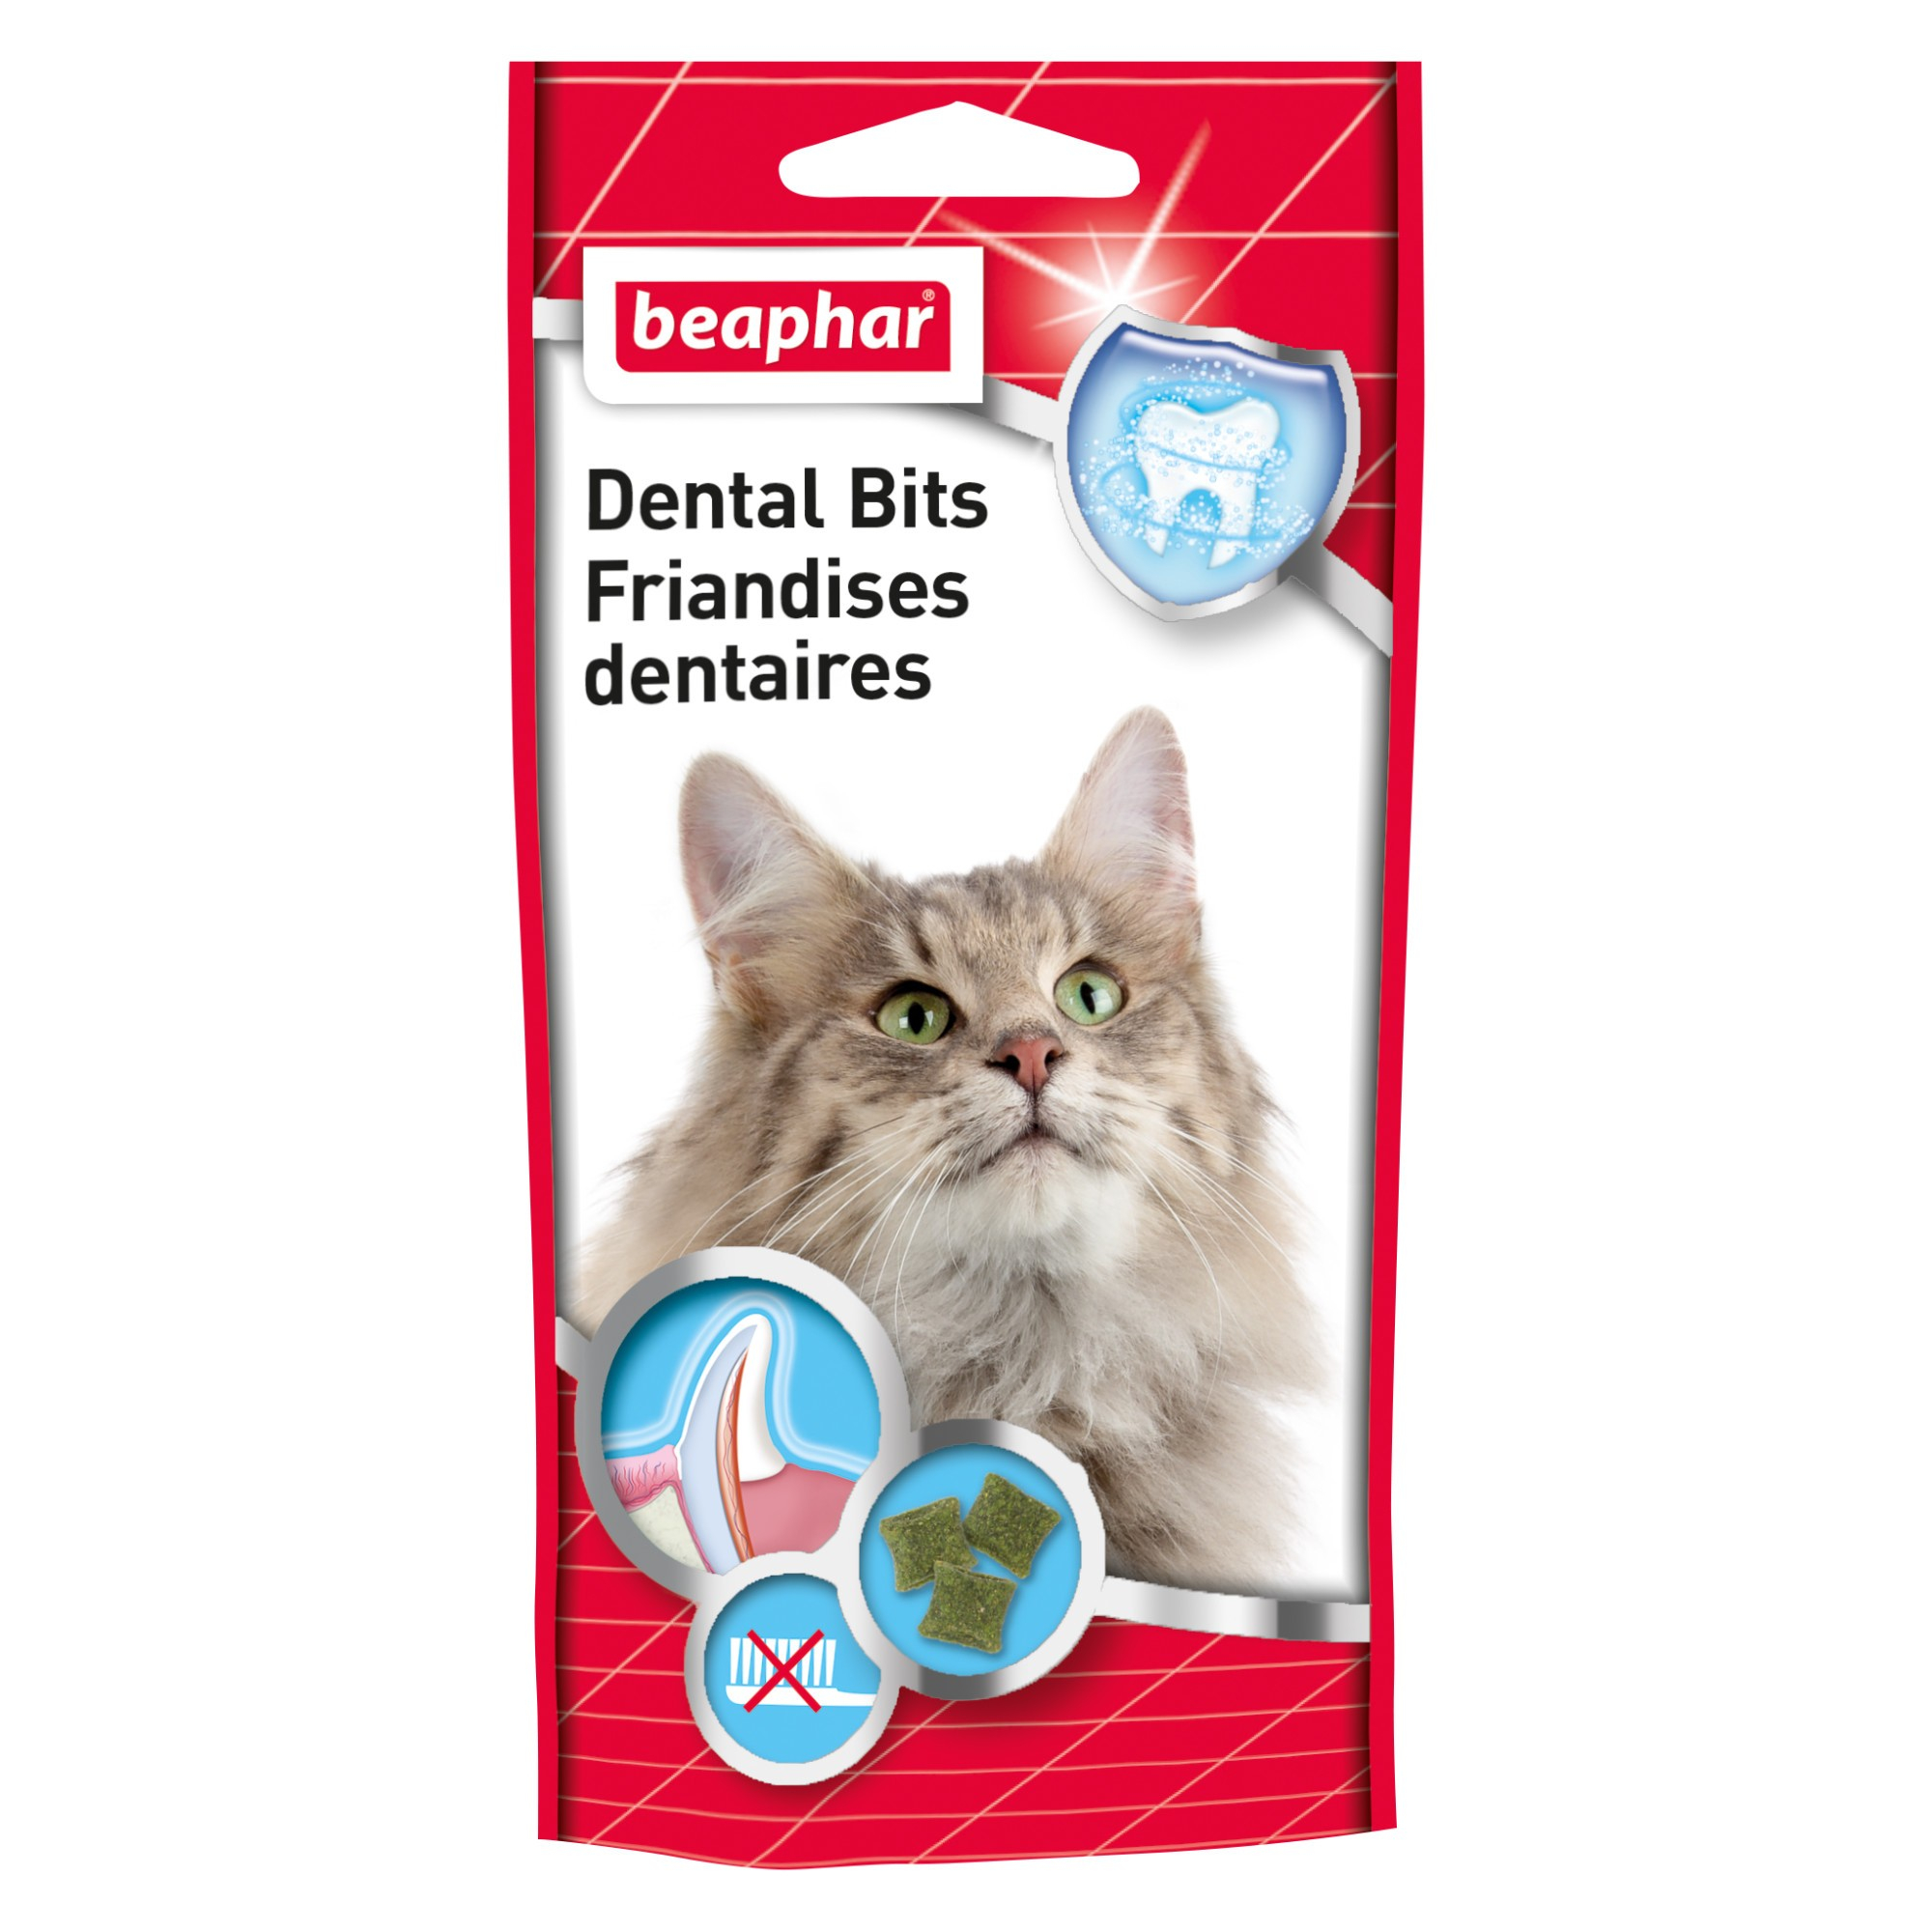 Guloseimas para dentes saudáveis dos gatos